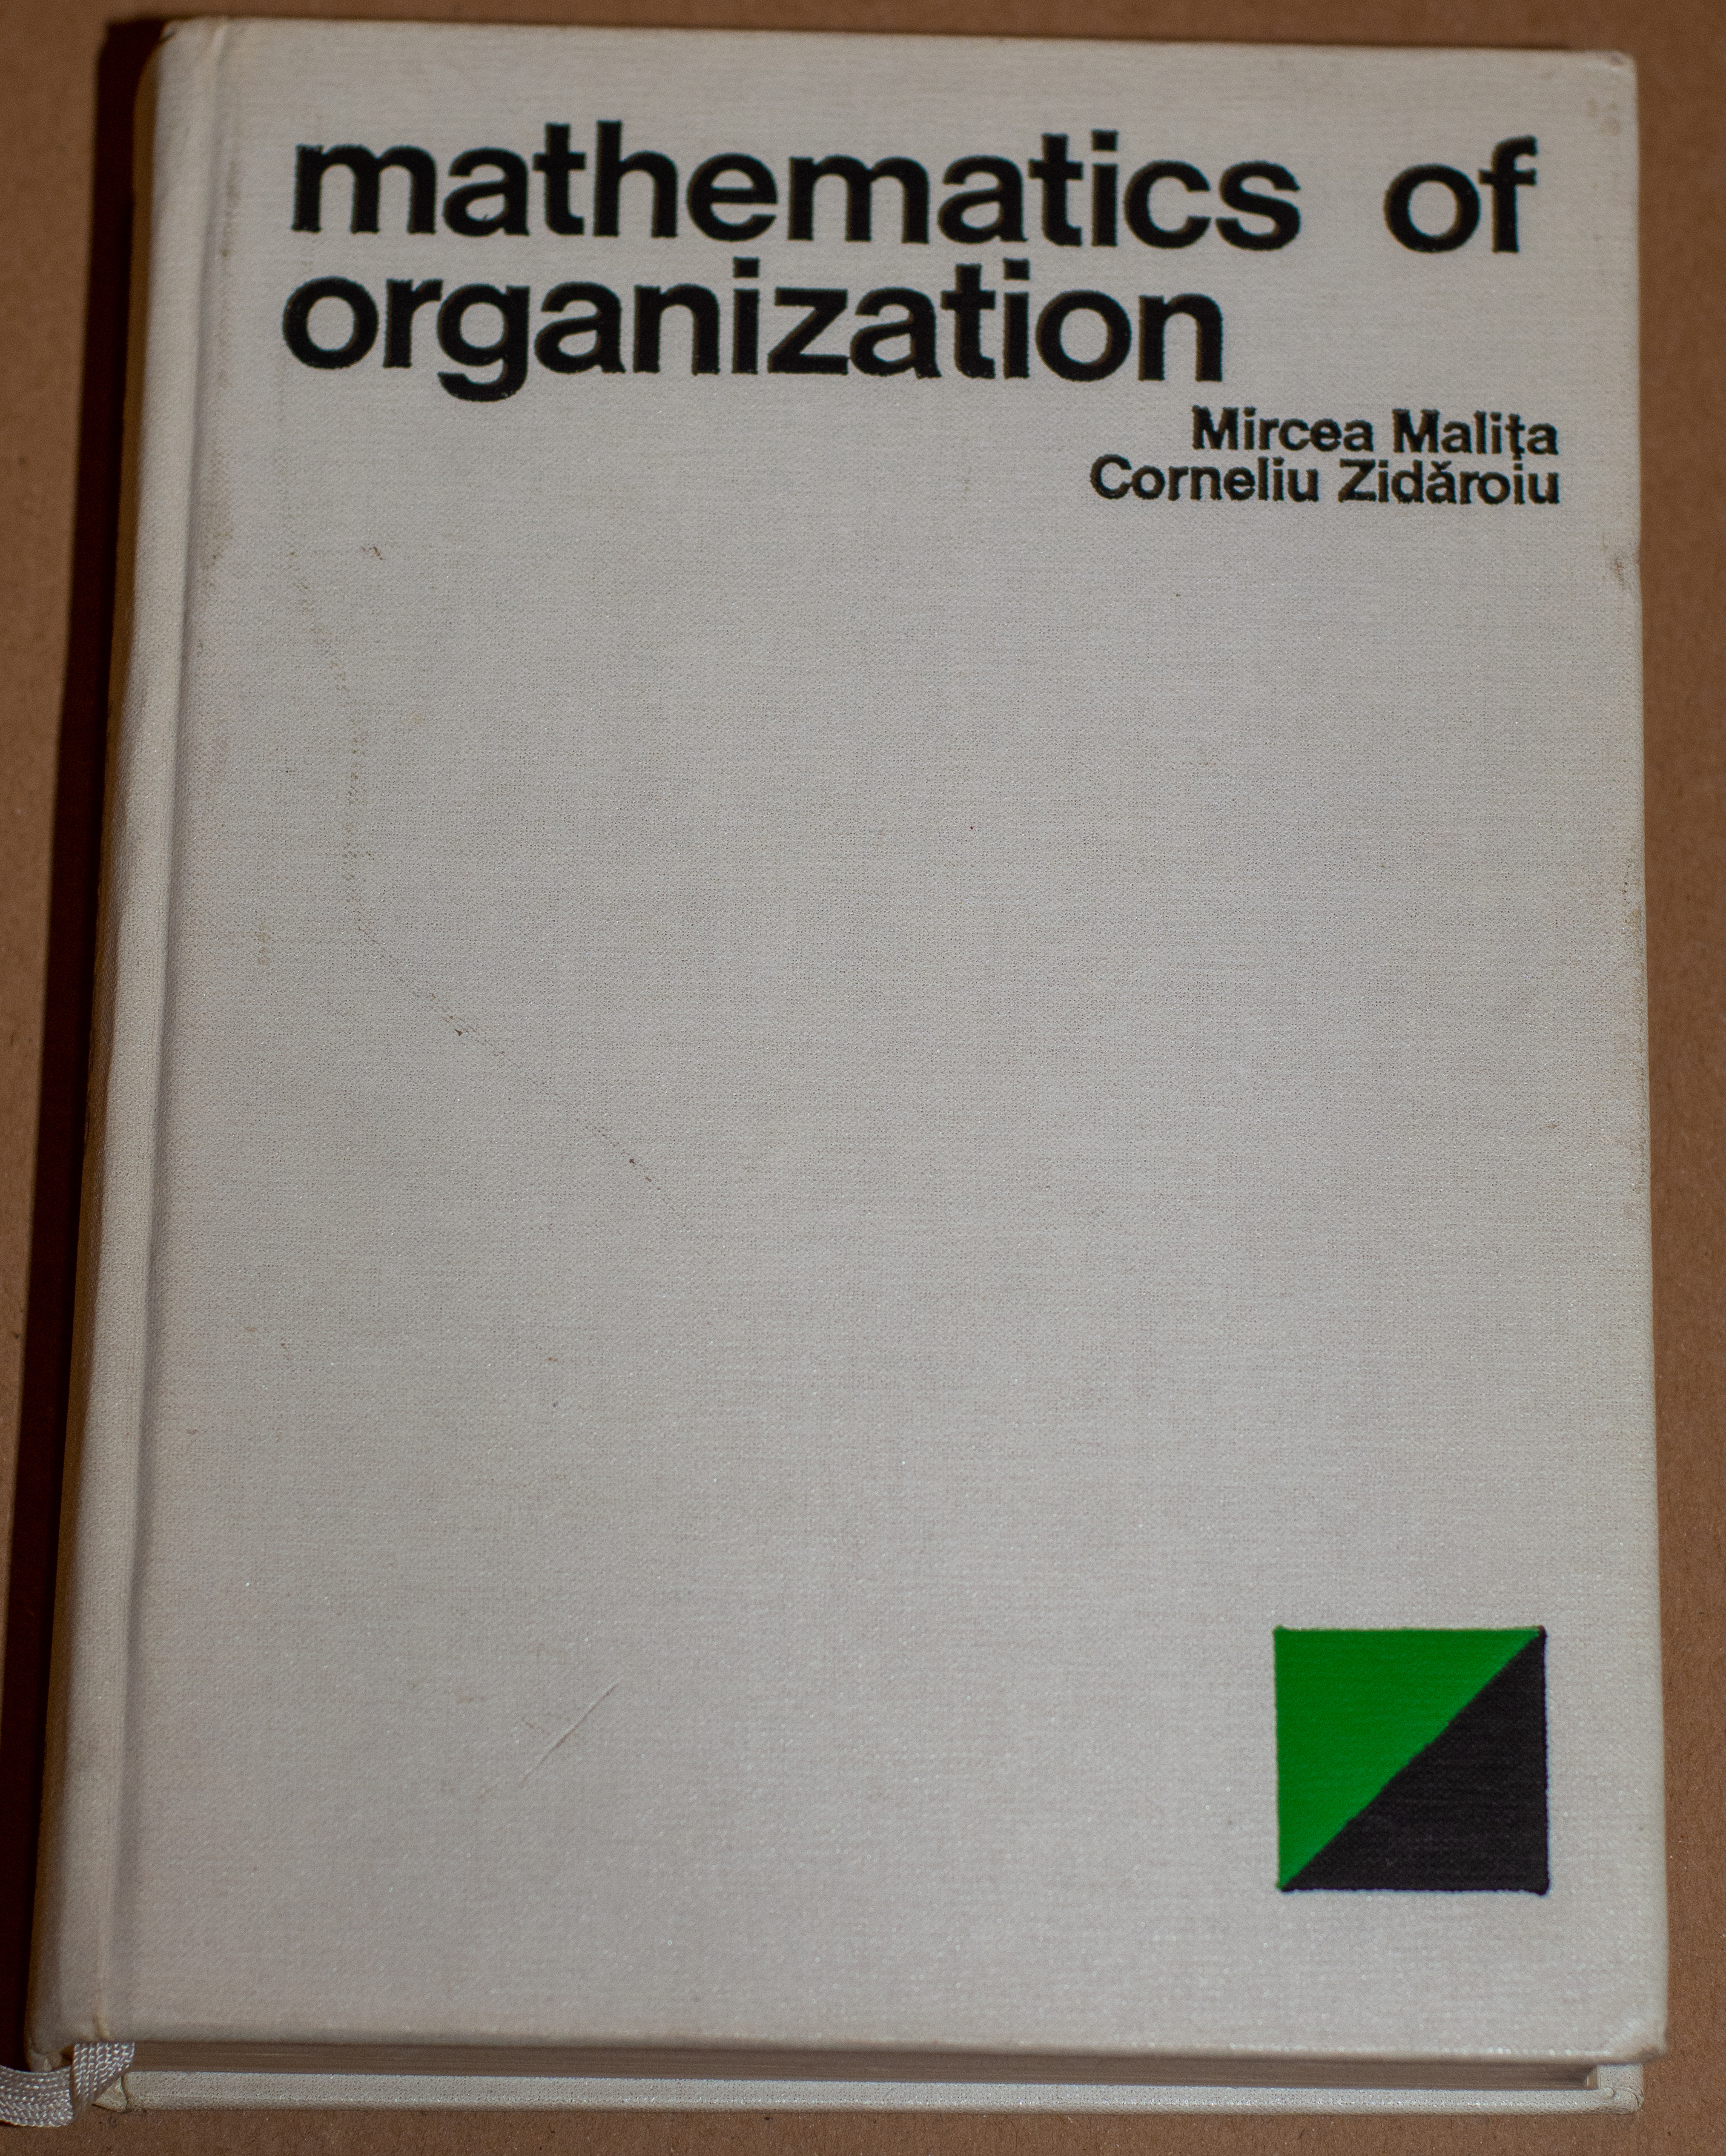 Mathematics of organization